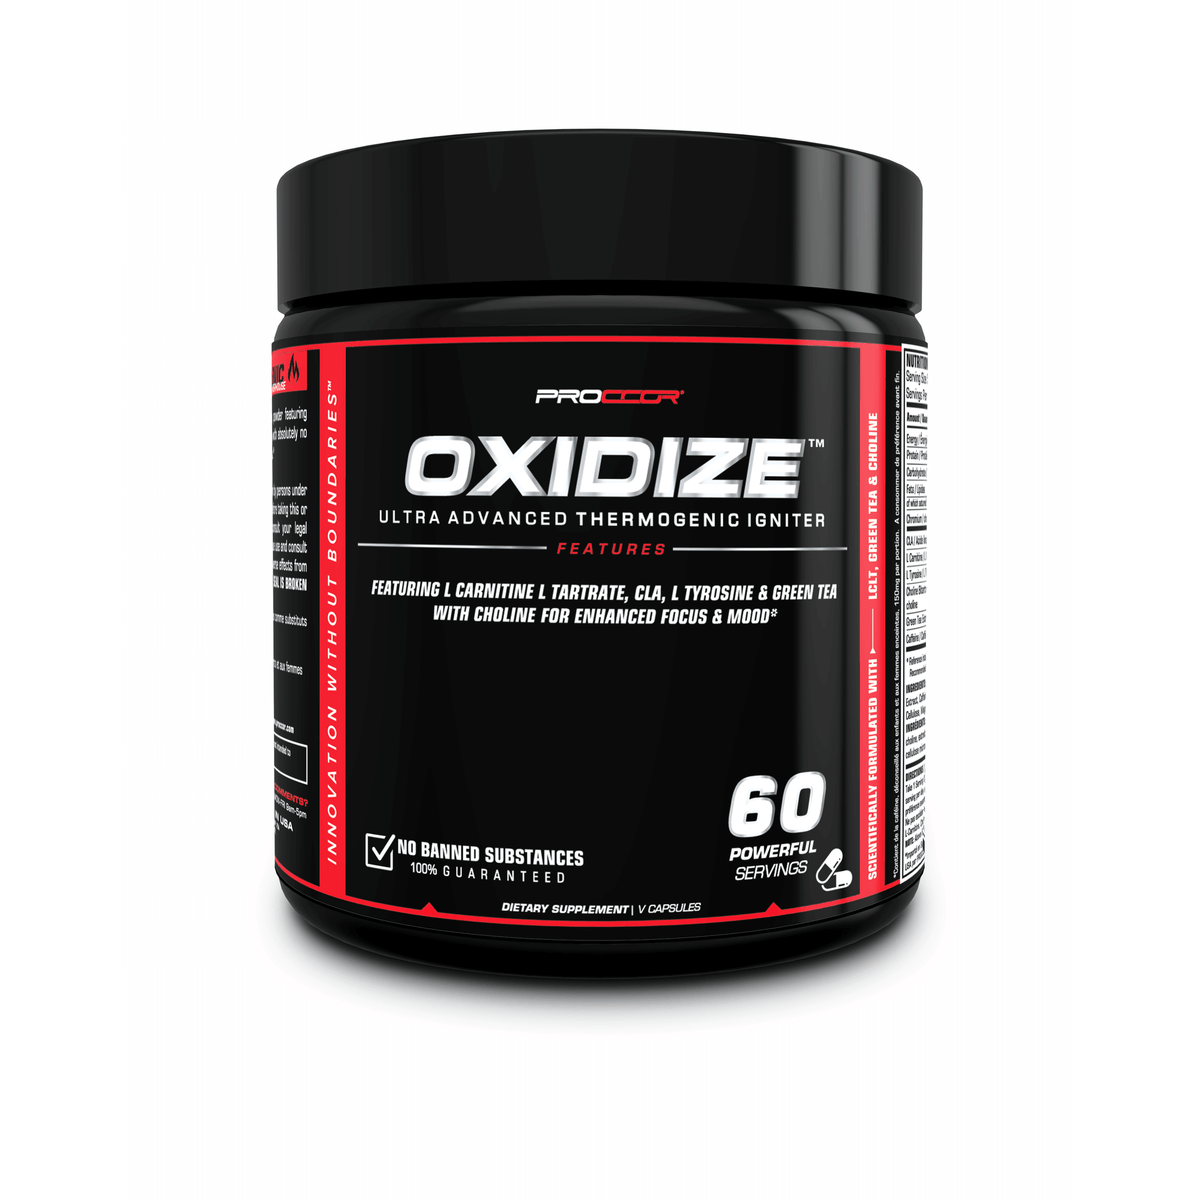 Oxidize - Proccor (date 04-24)